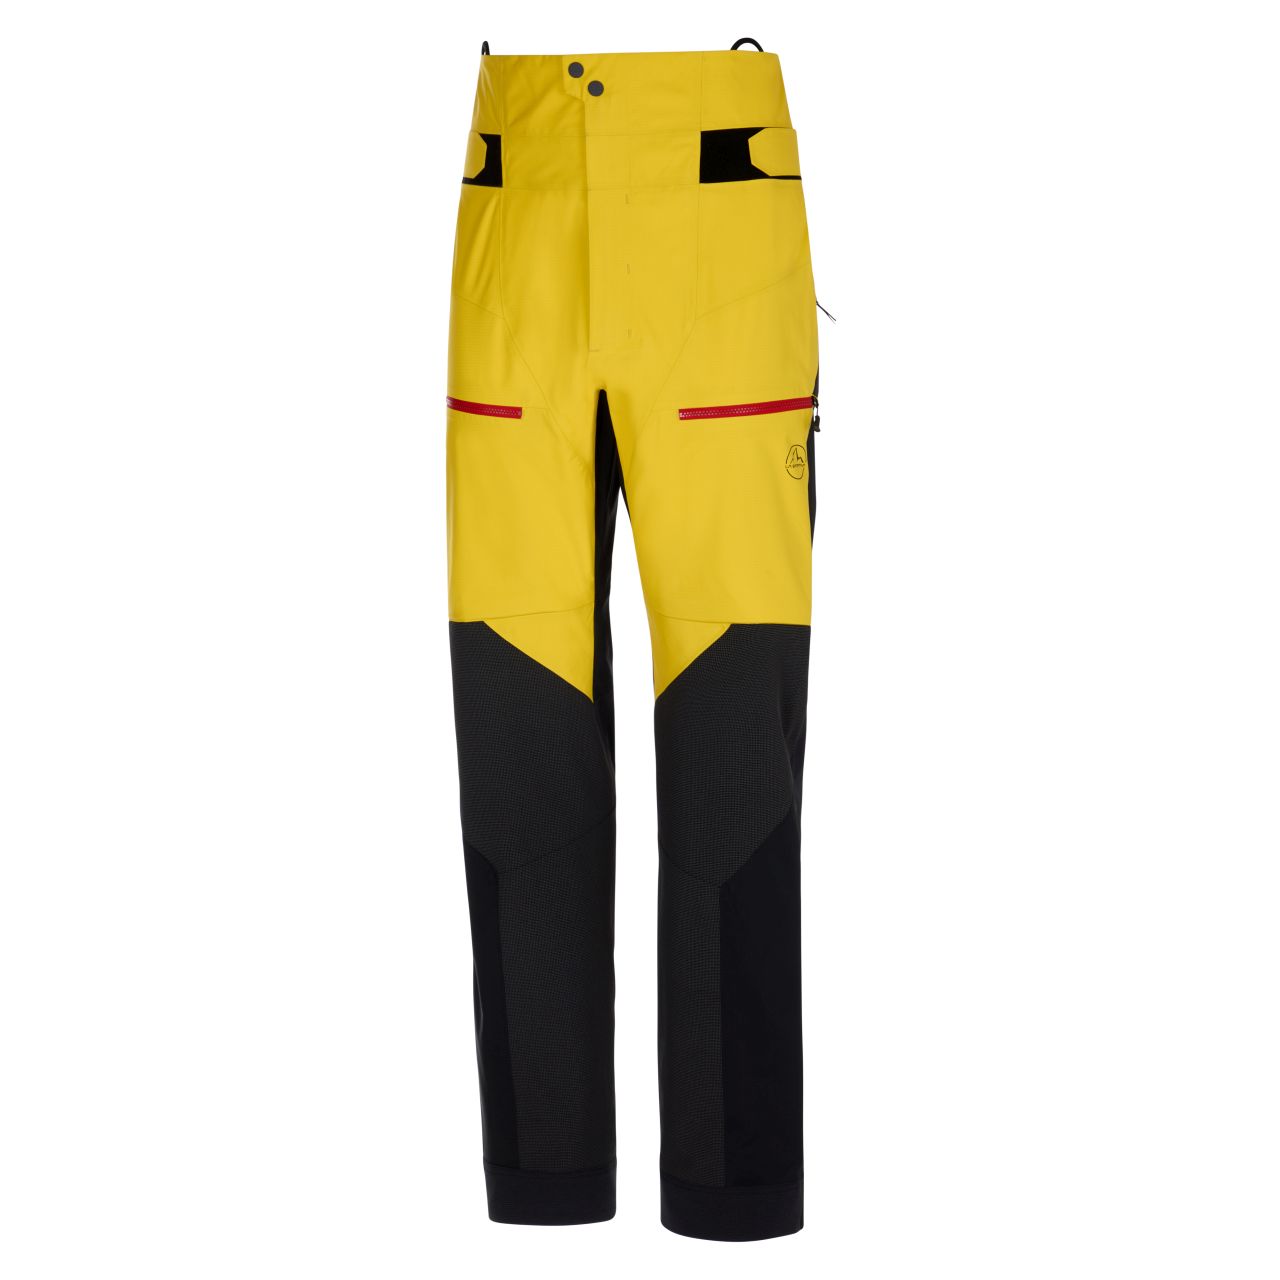 Supercouloir GTX Pro Pant Man Yellow/Black